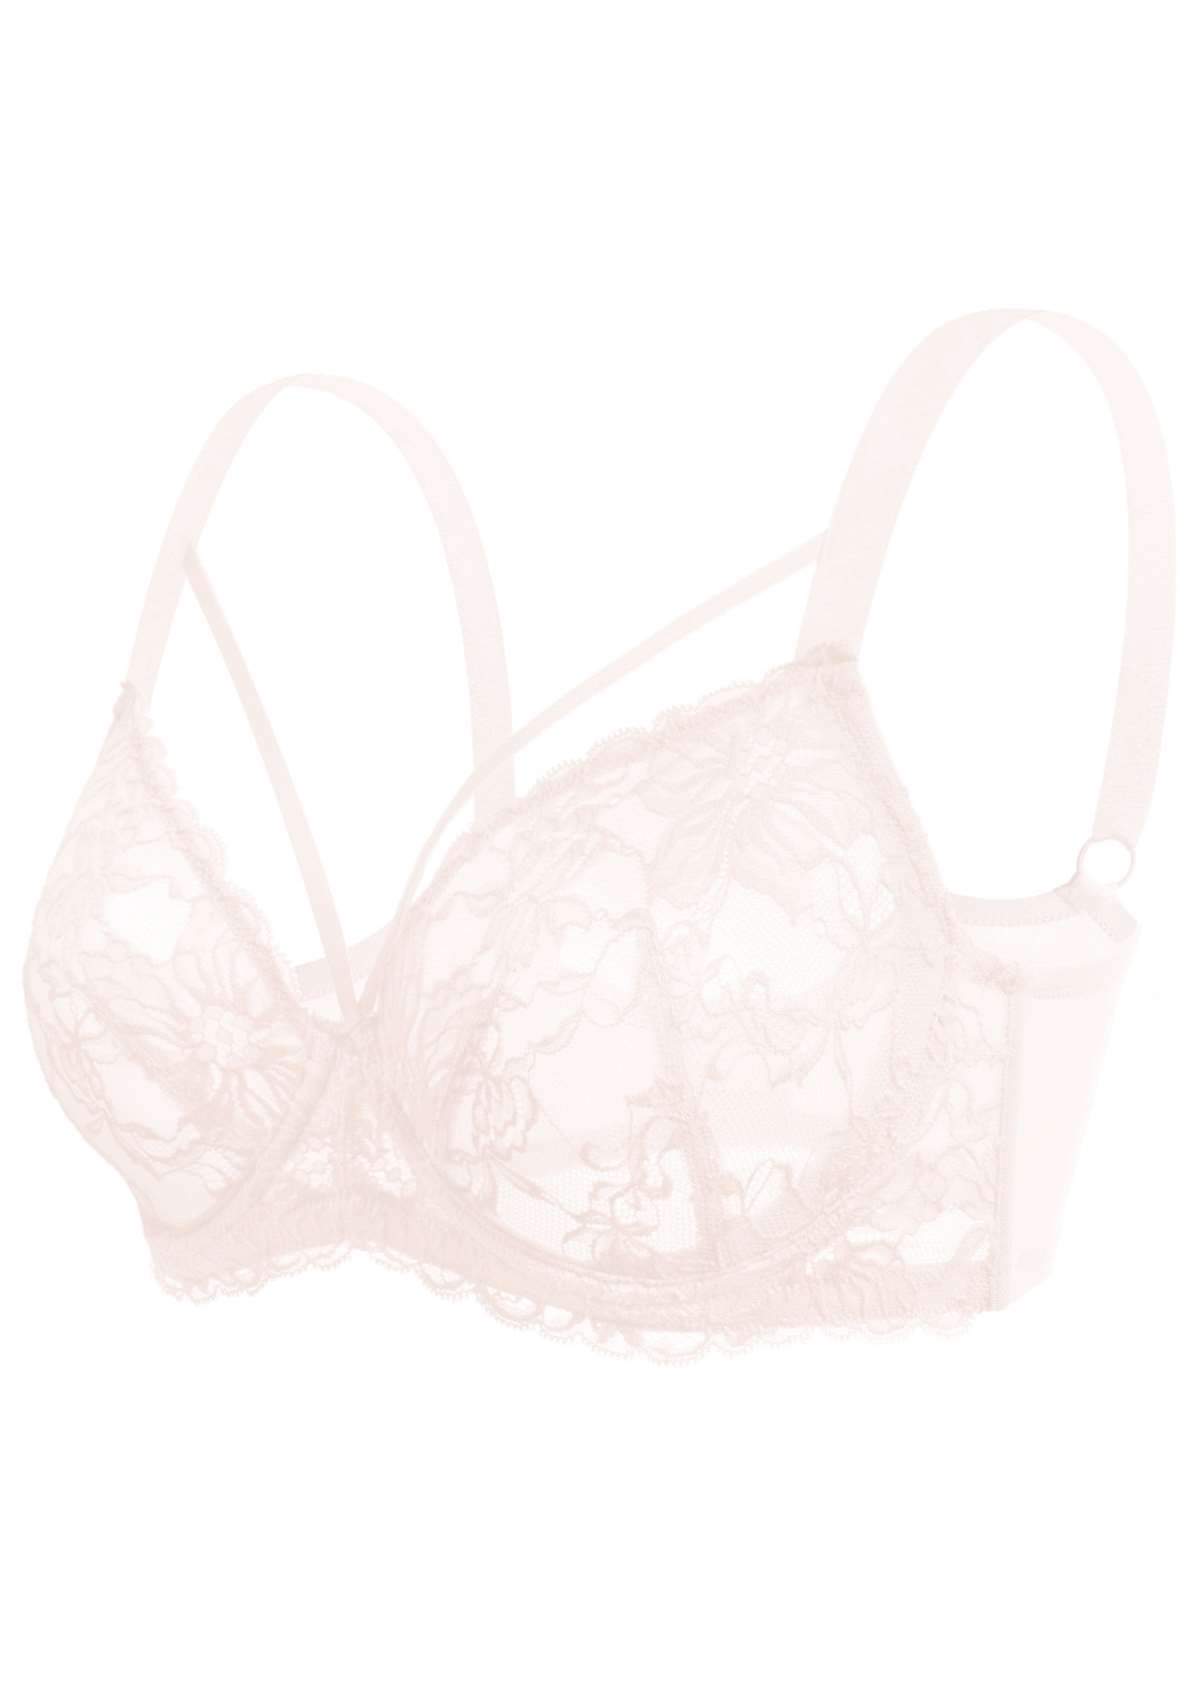 HSIA Pretty In Petals Underwire Lace Bra: No Padding, Full Cup Bra - Dusty Peach / 38 / DD/E